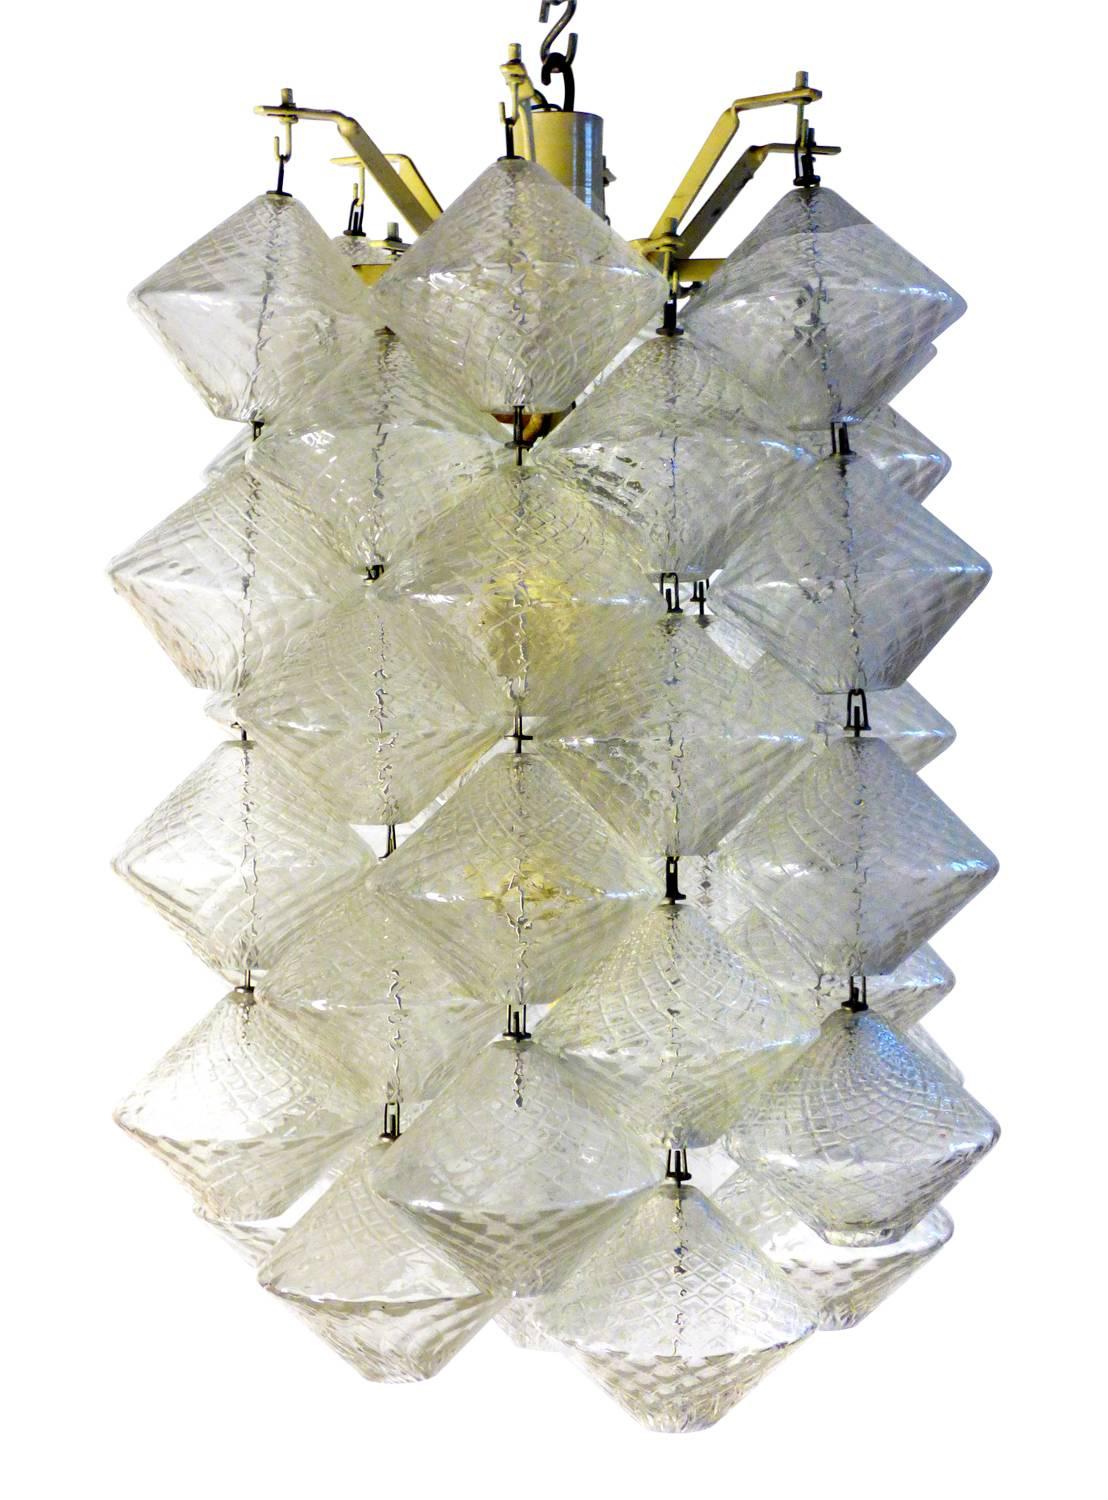 Paire de lustres en verre de Murano avec structure métallique, éléments en verre soufflé, produits par Salviati en 1956 et conçus par Vinicio Vianello.

Biographie 
Vinicio Vianello (Venise, 1923 - Zelarino-VE 1999), un artiste-designer aux